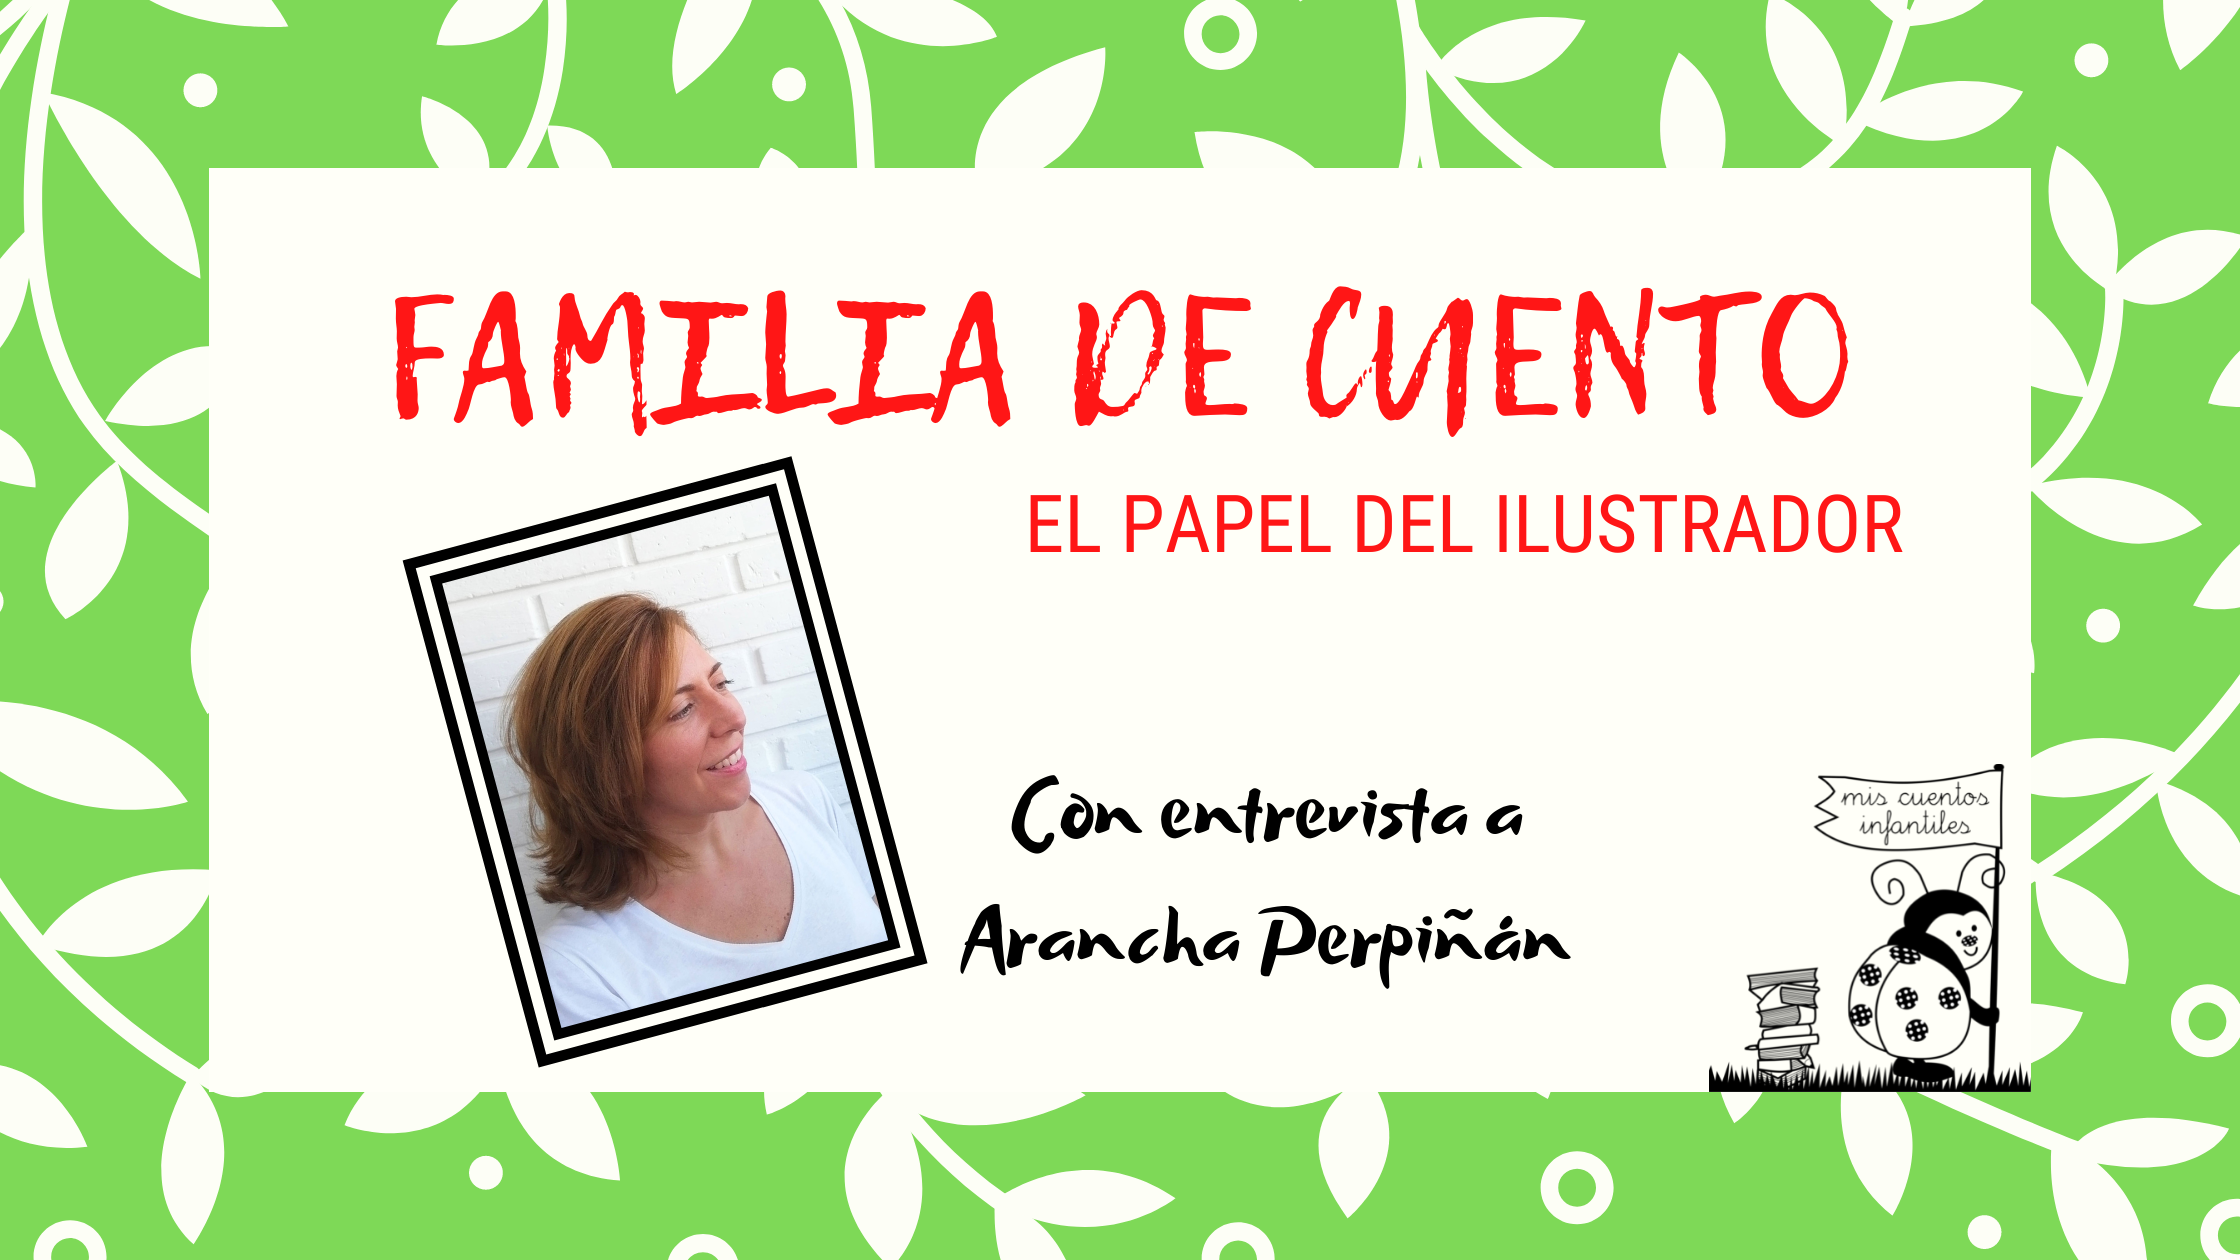 Familia de cuento: El papel del ilustrador con Arancha Perpiñán